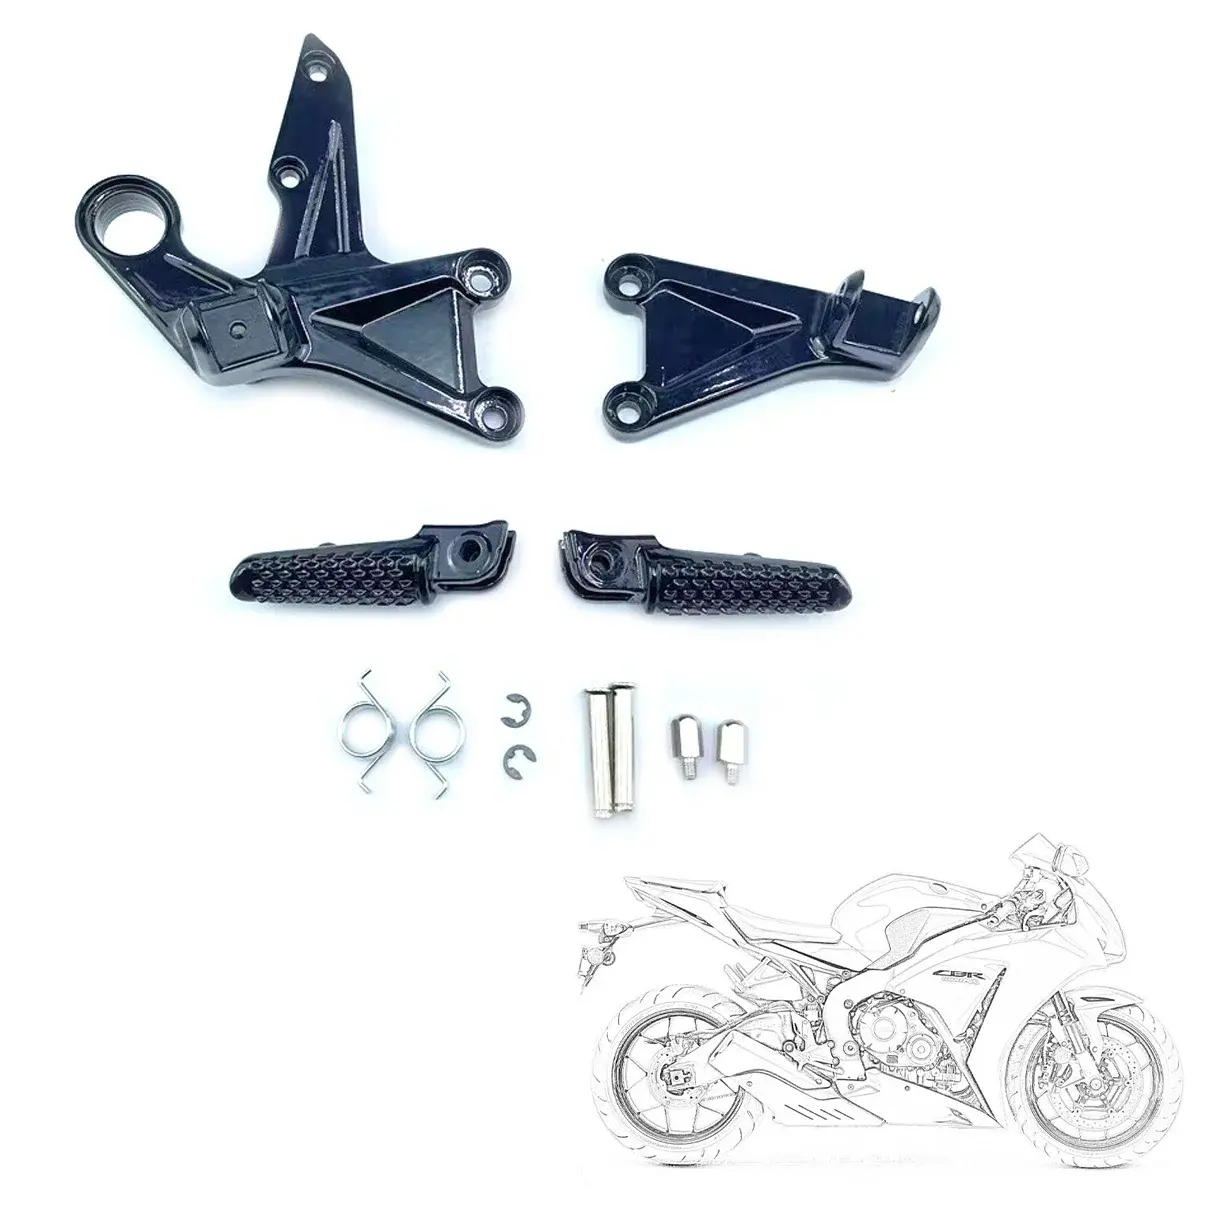 Realzion kit de apoio para pedal dianteiro de acessórios para motocicletas Honda CBR1000RR 2008-2015